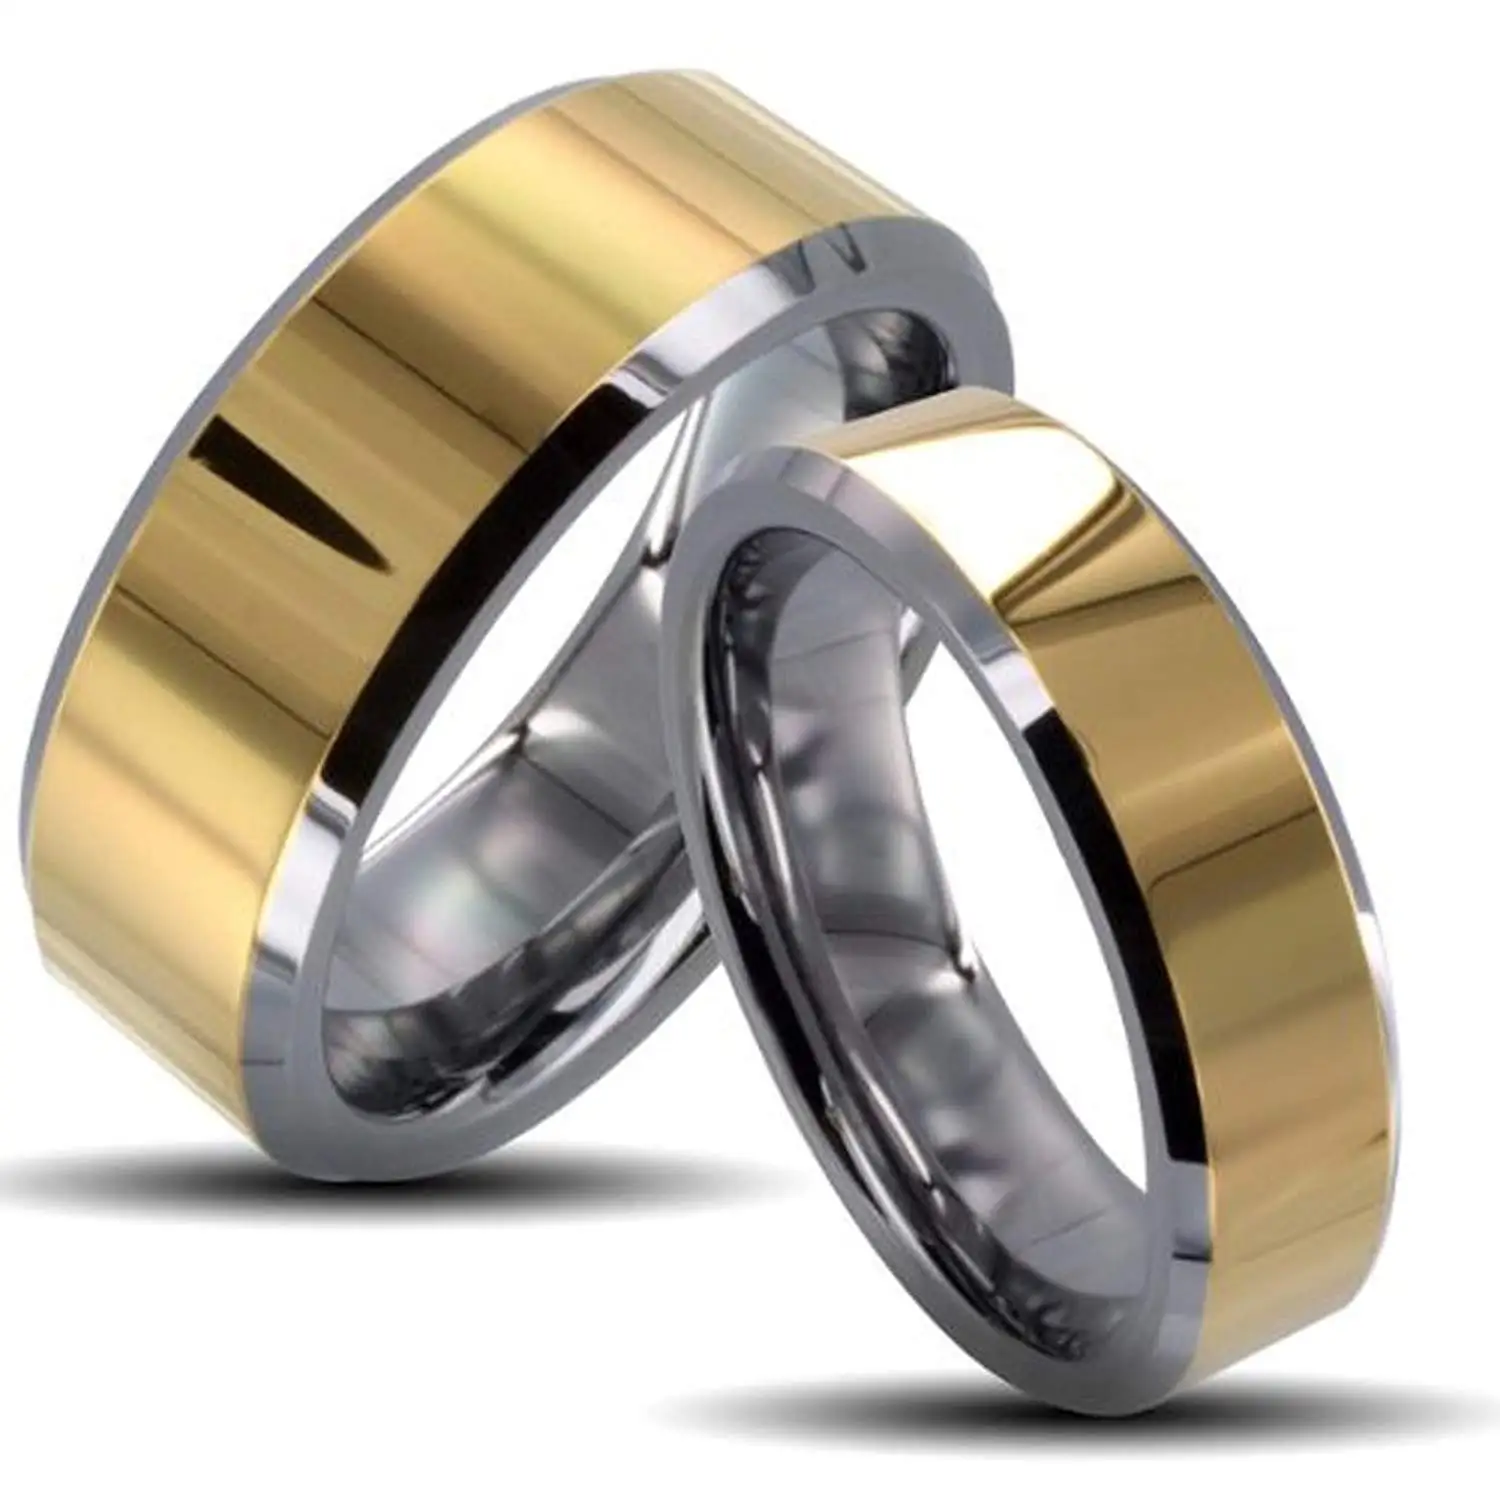 Оригинал обручальные кольца. Sunlight обручальные кольца парные. Carraji Tungsten Jewelry мужские кольца. Необычные обручальные кольца парные. Широкие обручальные кольца.